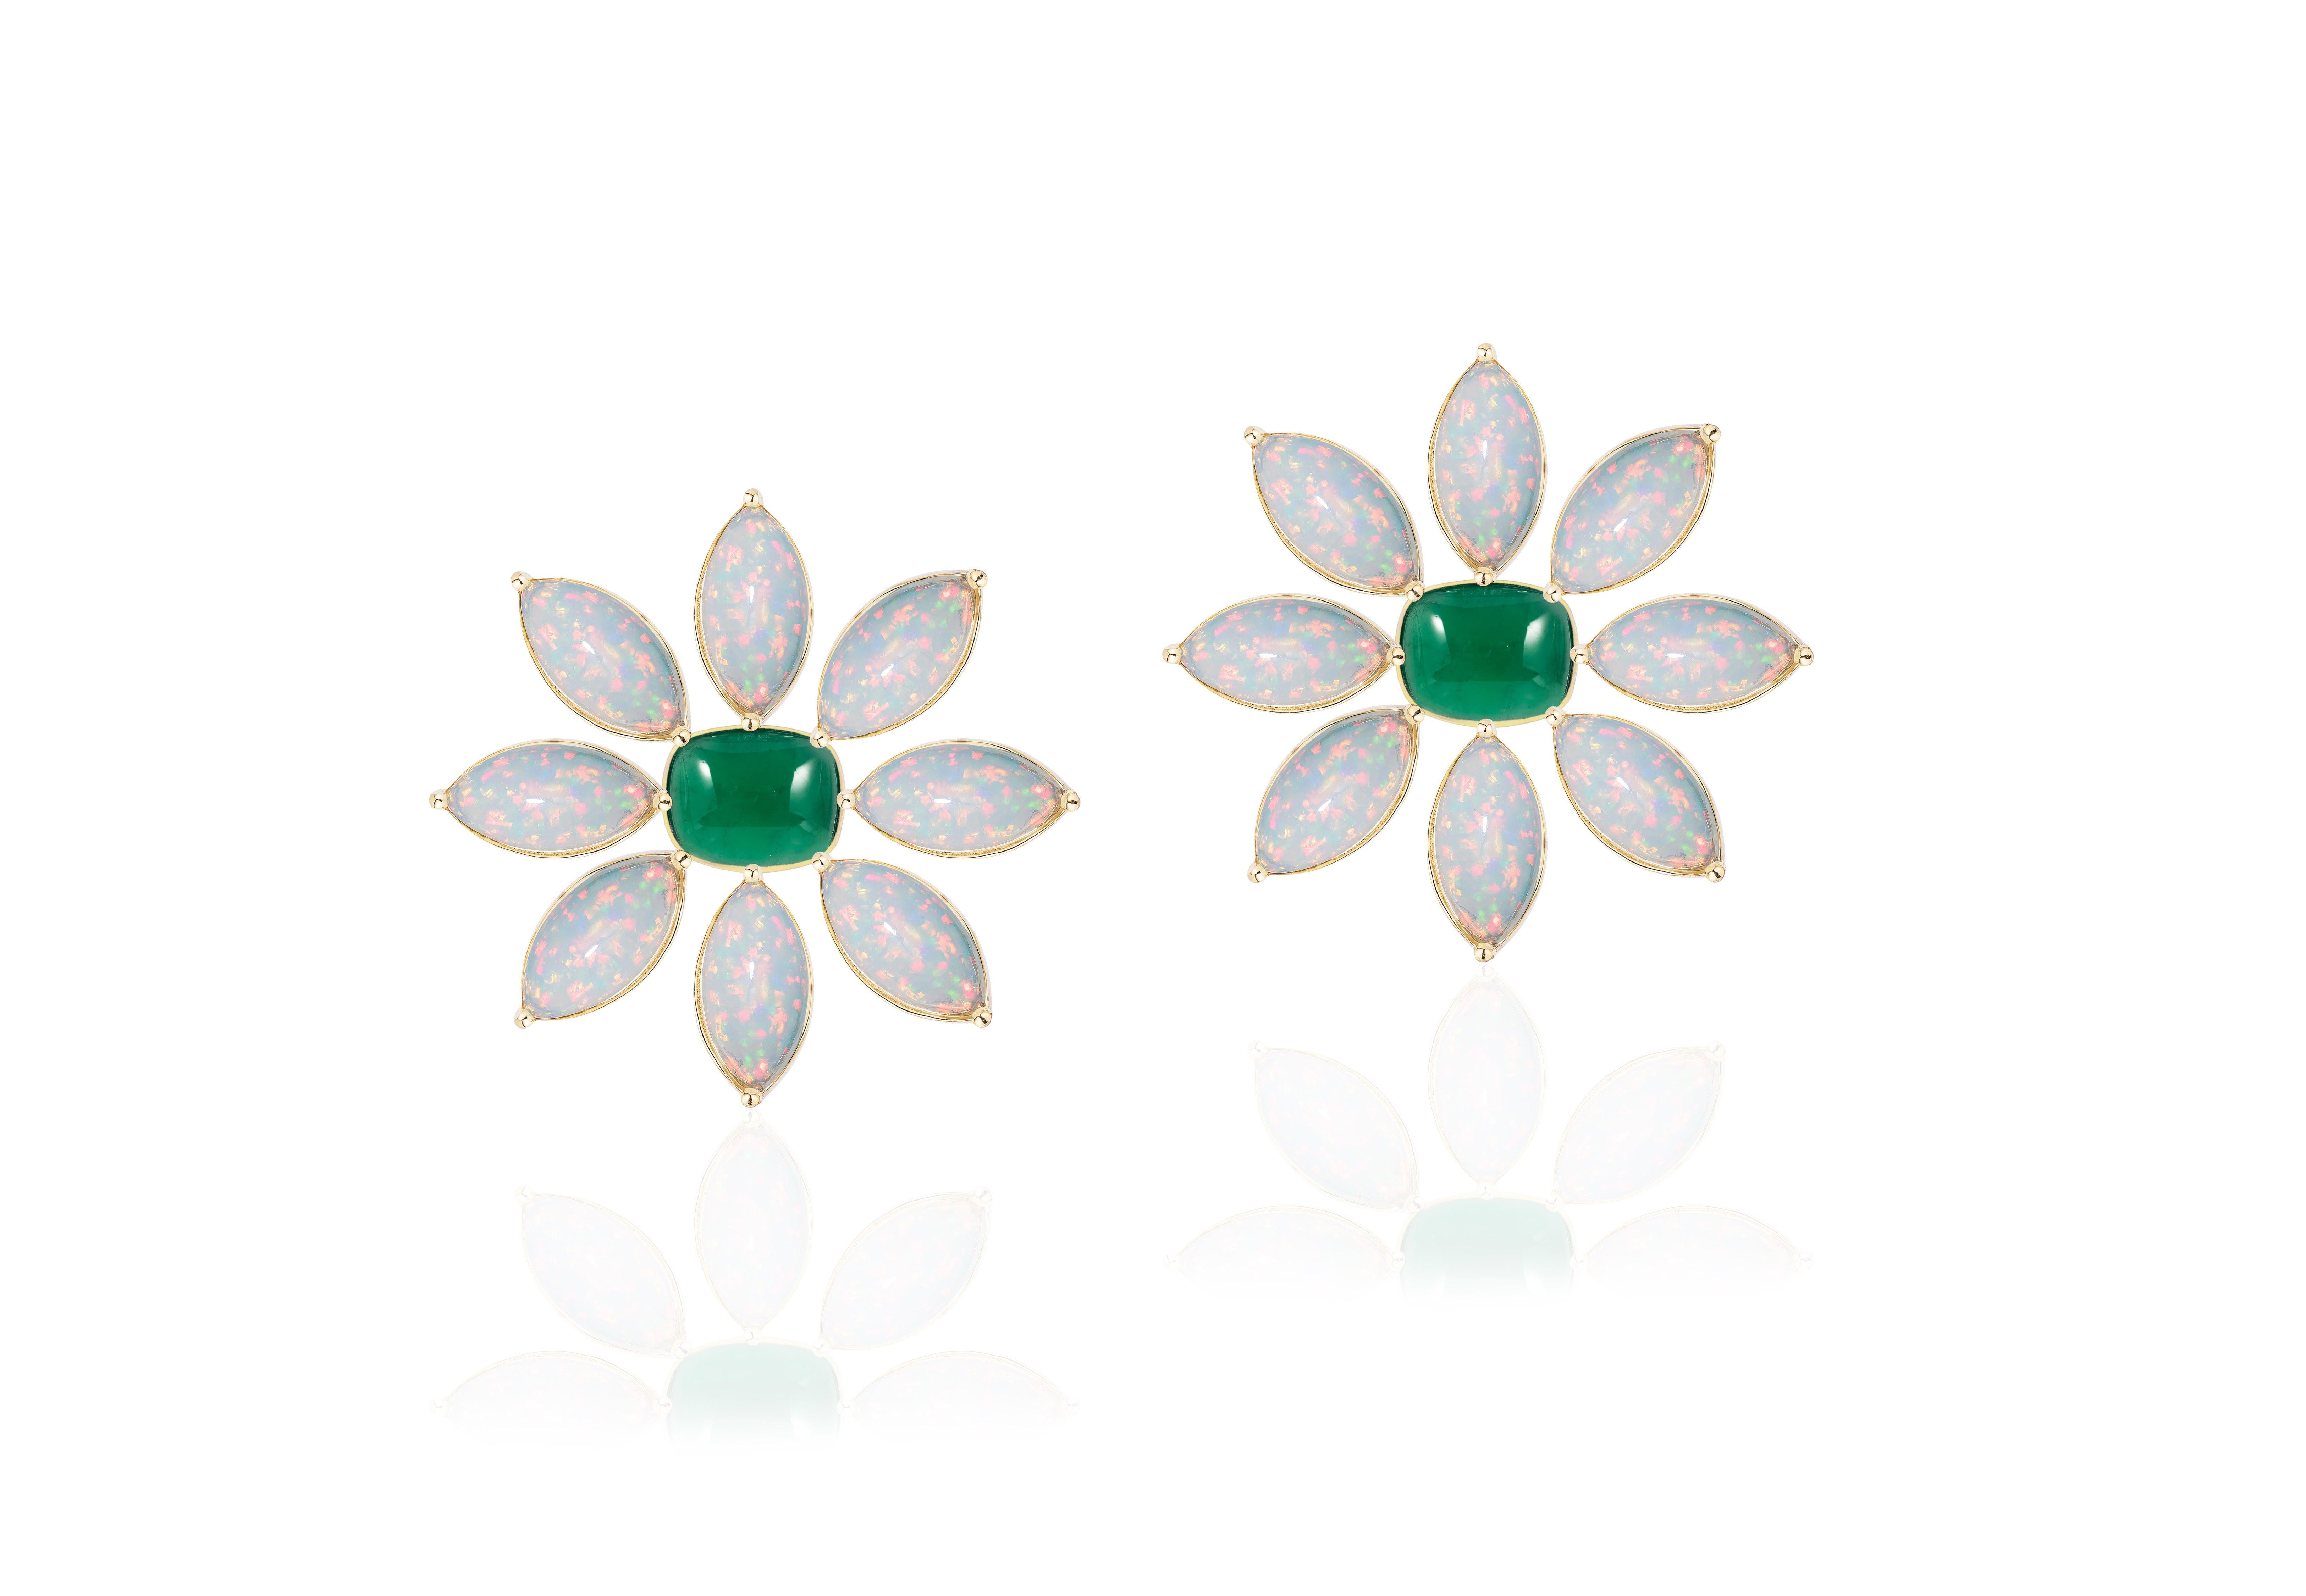 Marquise Cut Goshwara Emerald Cushion Cab and Marquise Opal Earrings